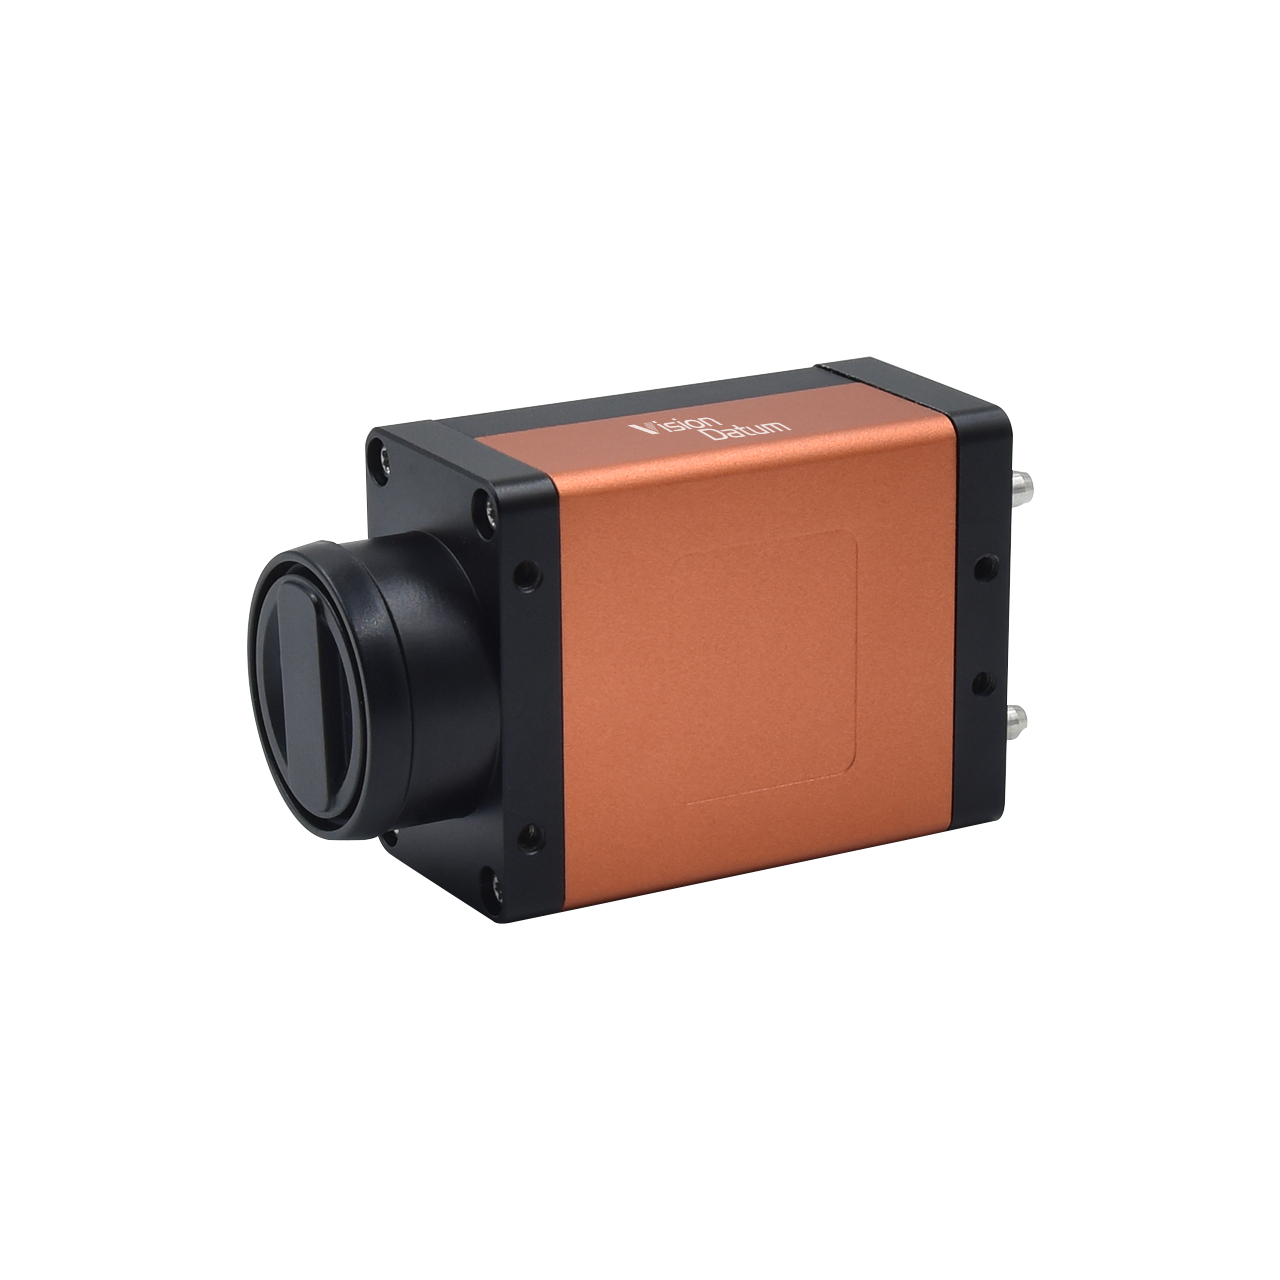 5-мегапиксельная камера IMX264, 30 кадров в секунду, камера CameraLink с глобальным сканированием области затвора